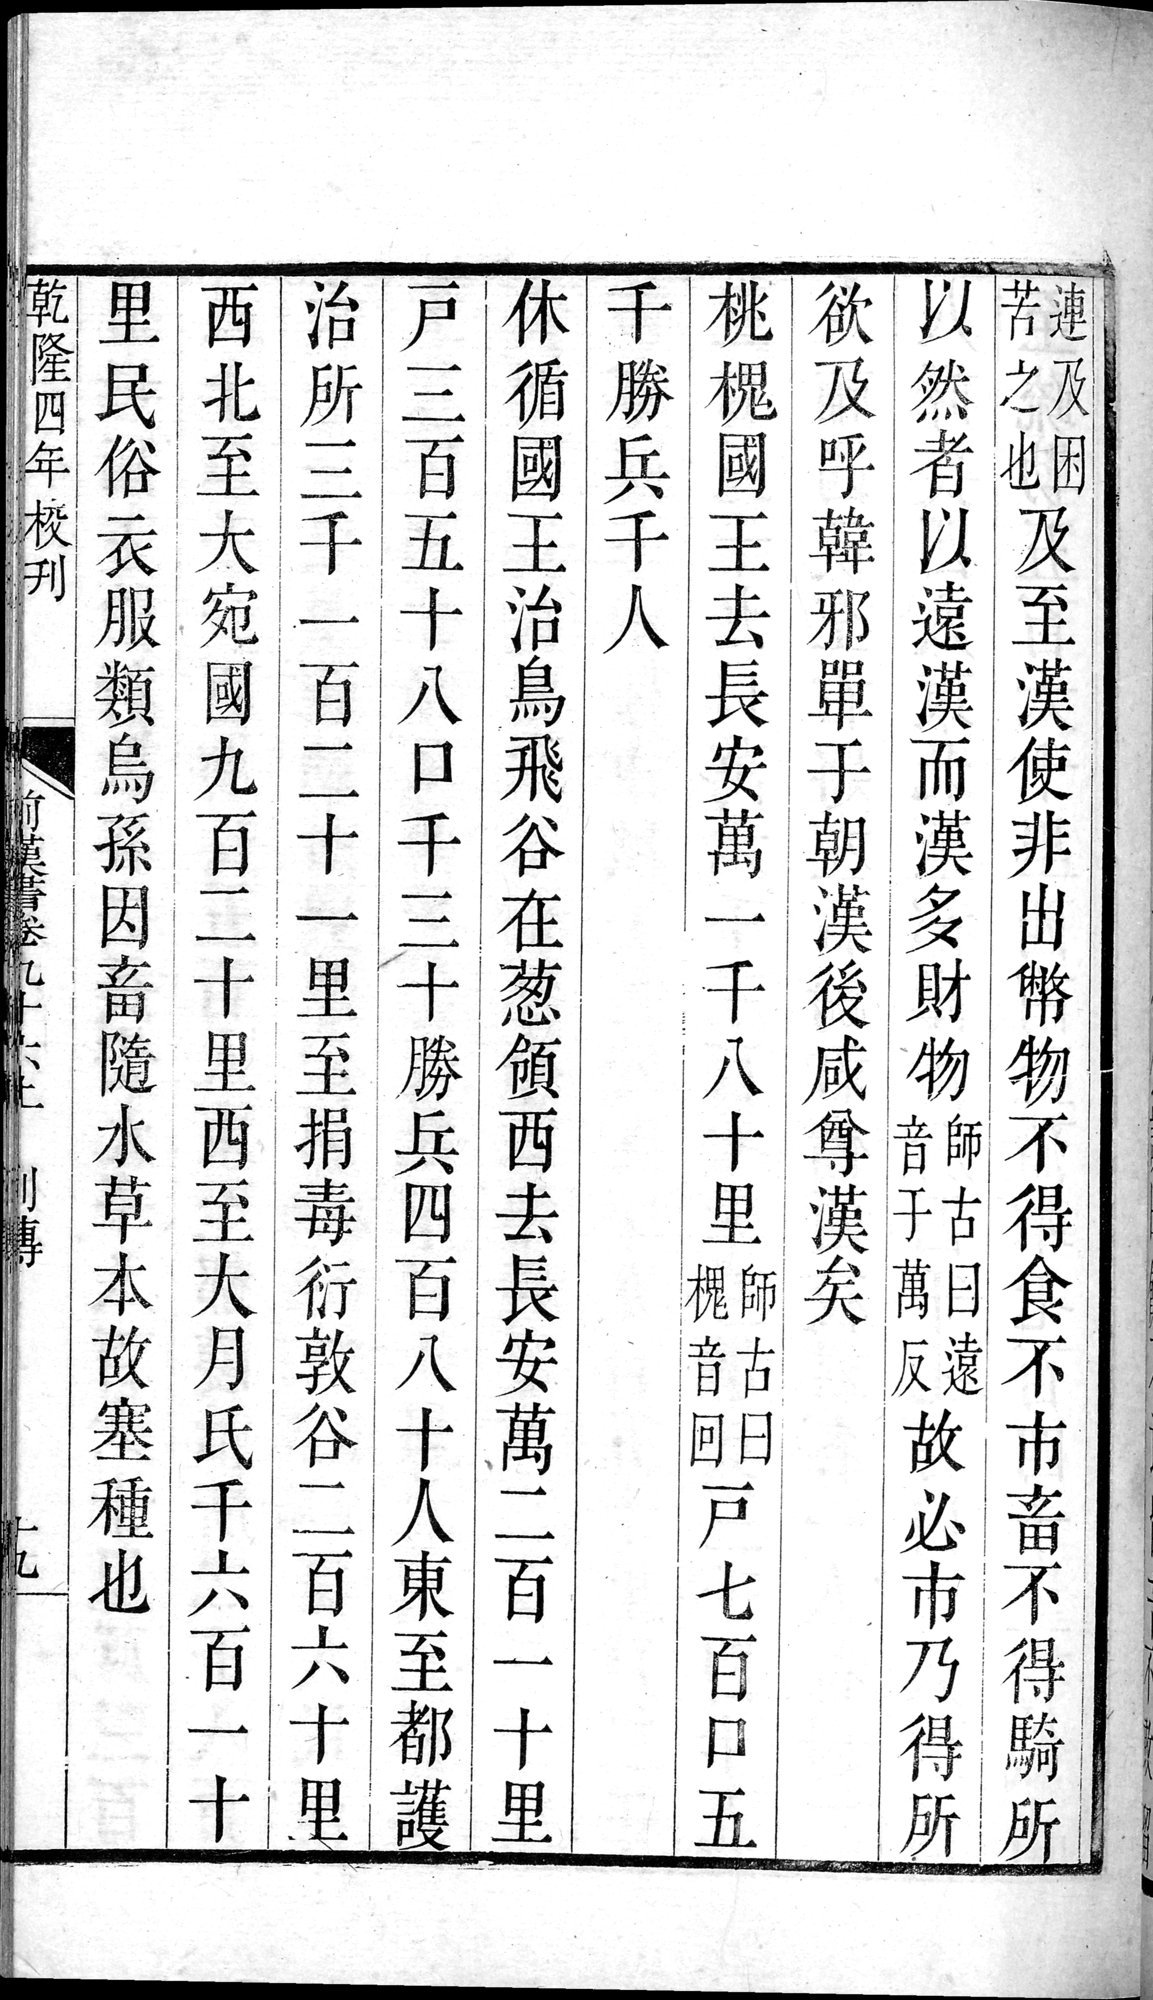 前漢書 : vol.96 top / Page 37 (Grayscale High Resolution Image)